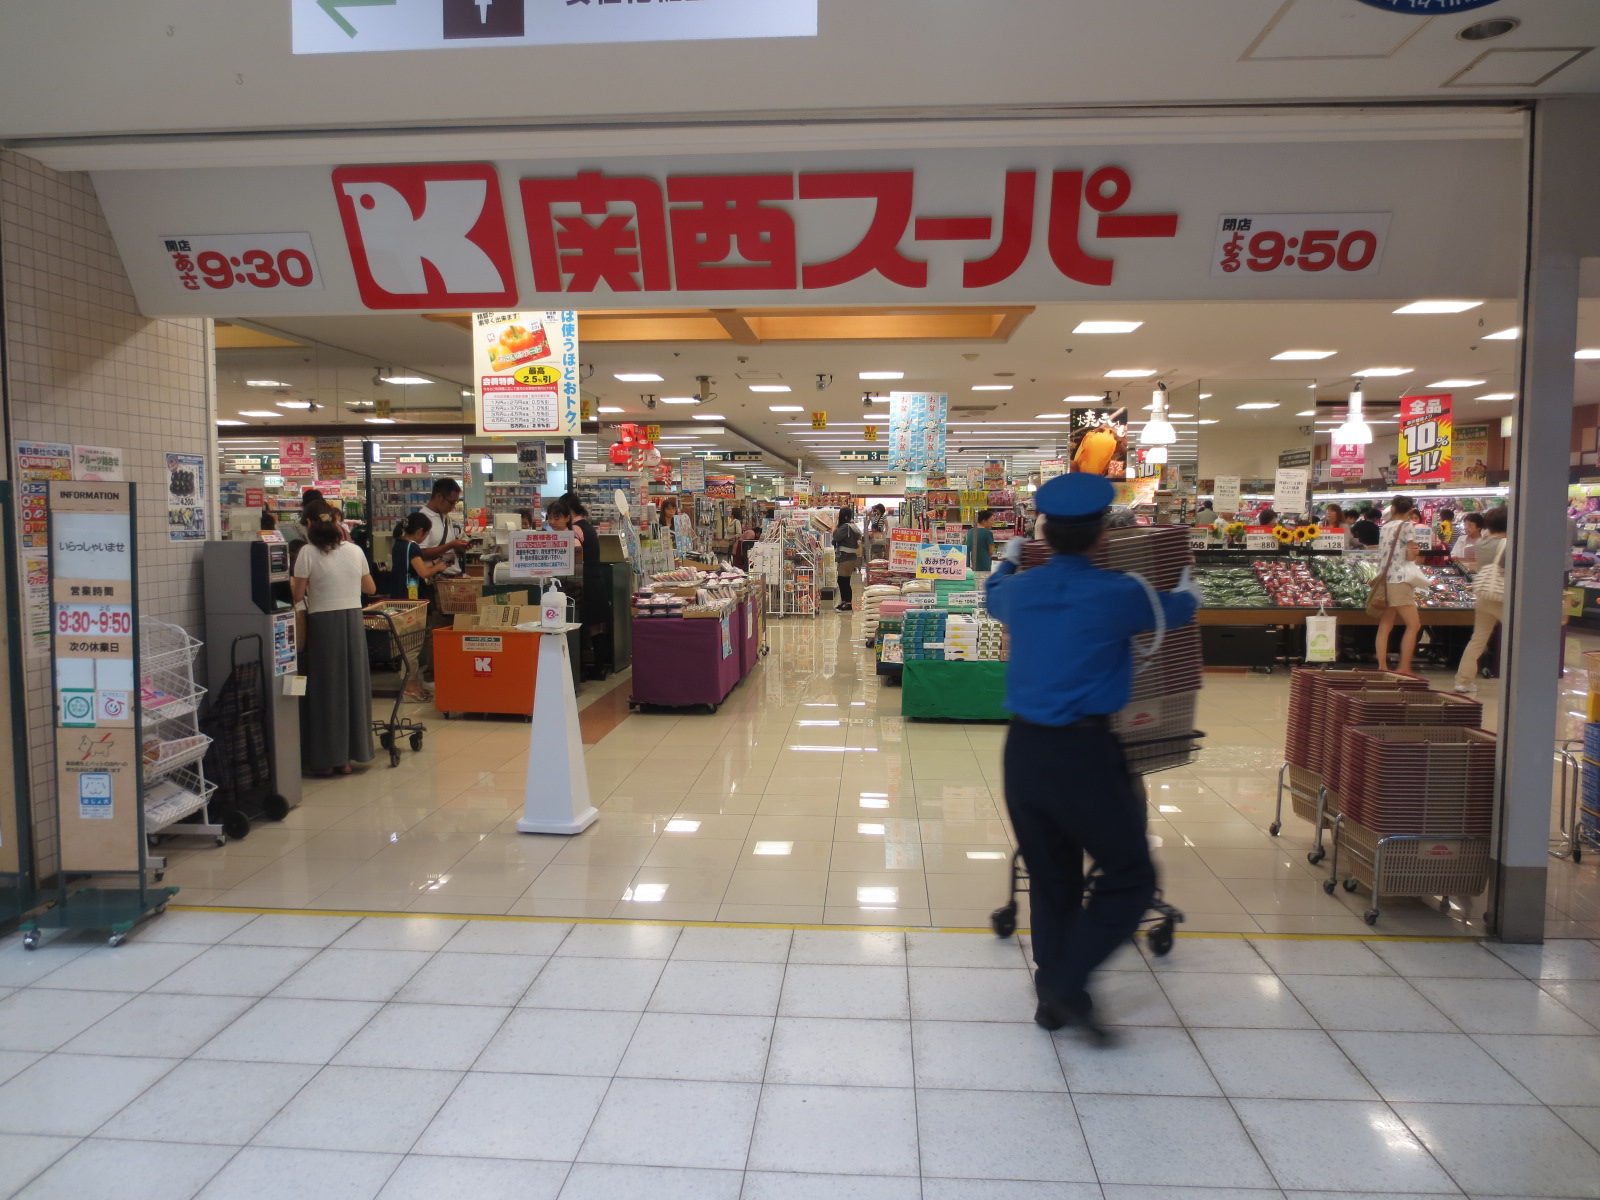 Supermarket. 337m to the Kansai Super Selva store (Super)